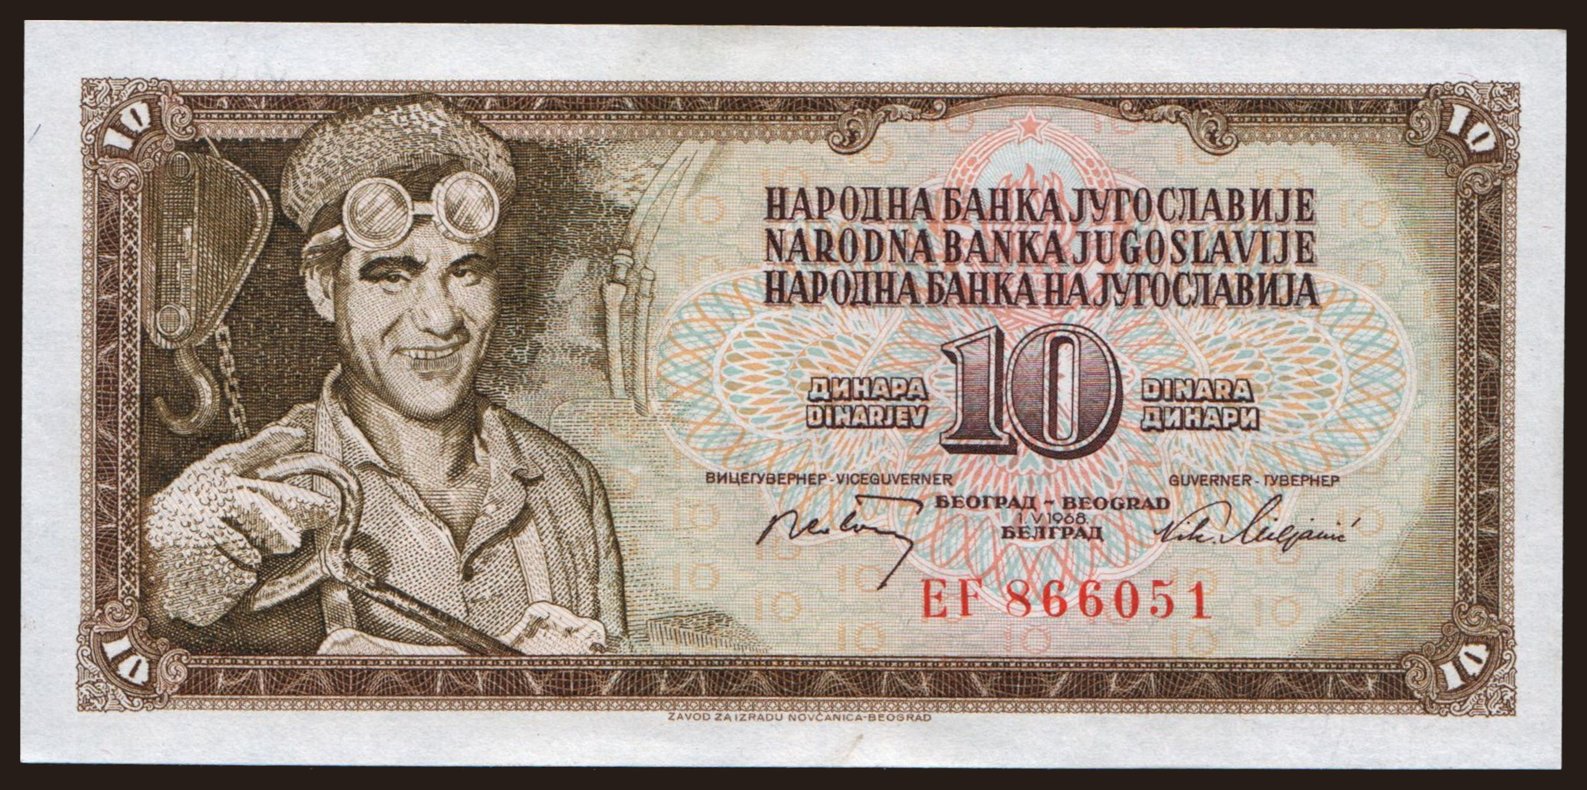 10 dinara, 1968